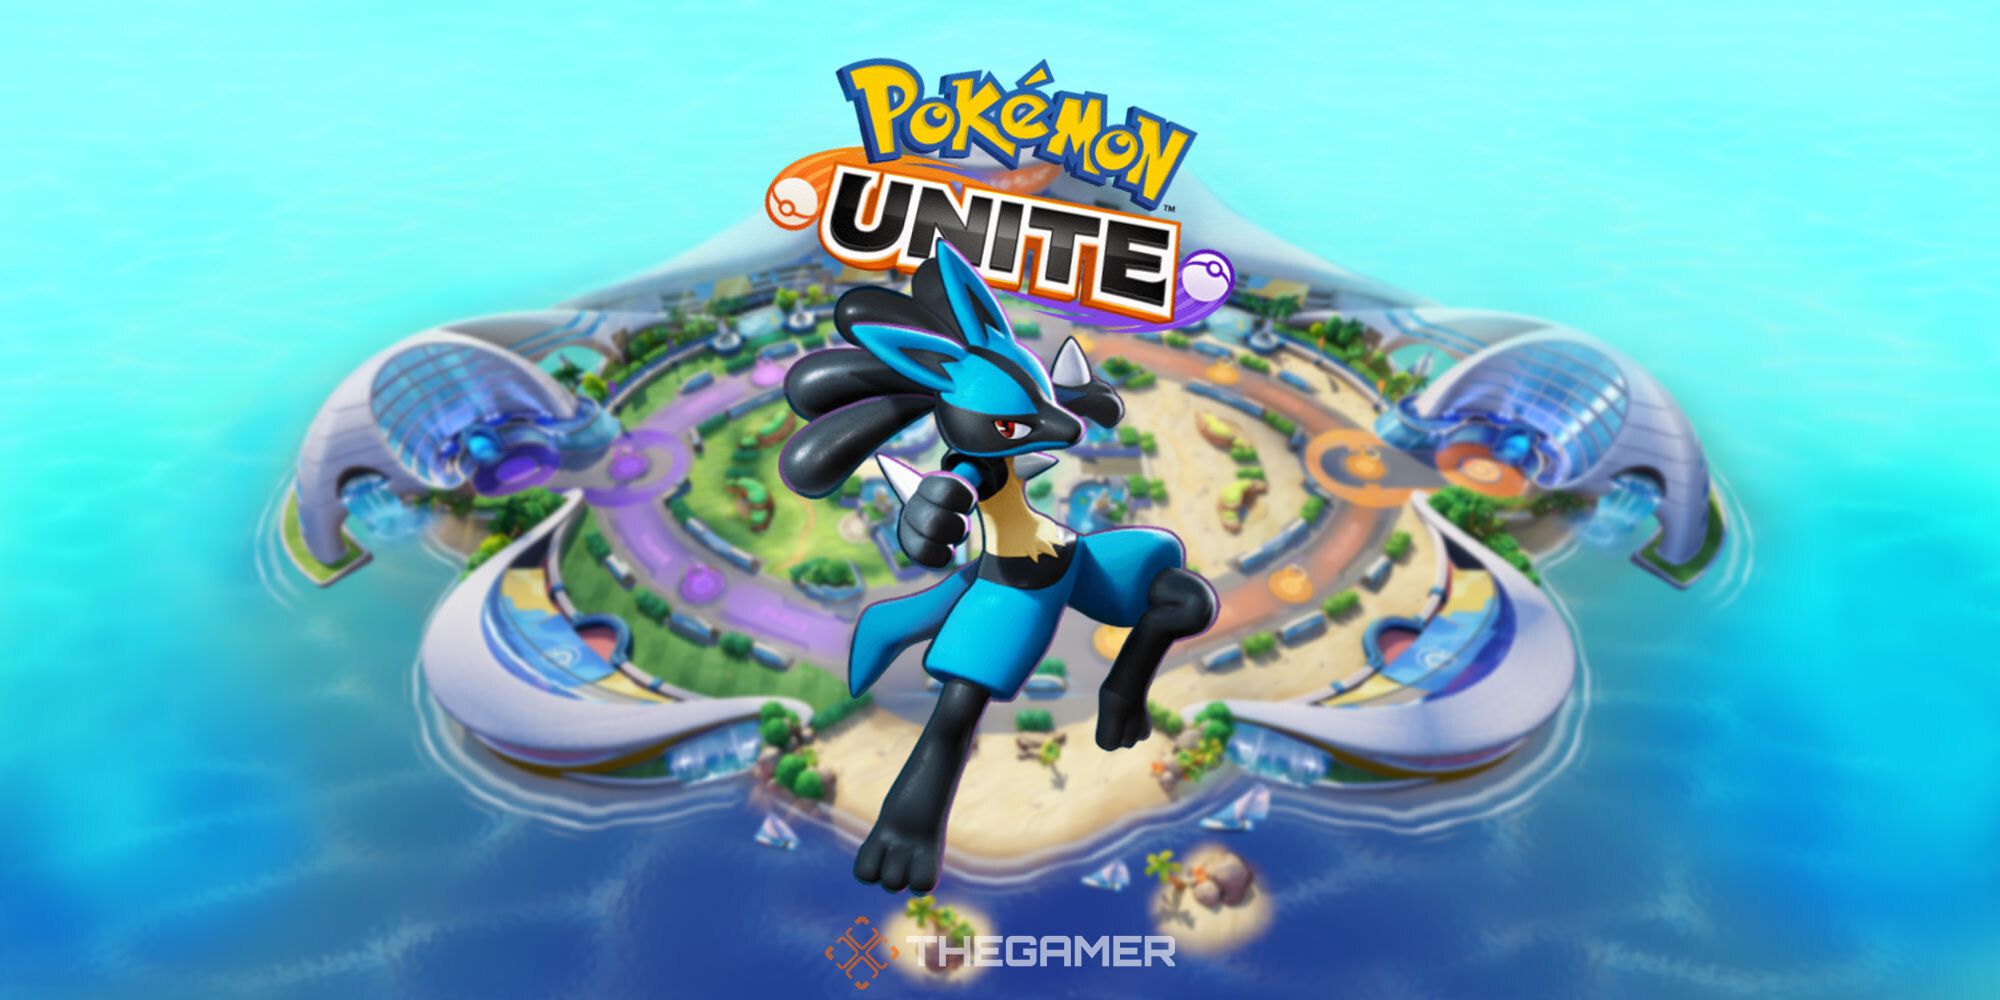 ◓ Guia do Iniciante: Como jogar melhor com Lucario no Pokémon UNITE  (Informações & Builds recomendadas)